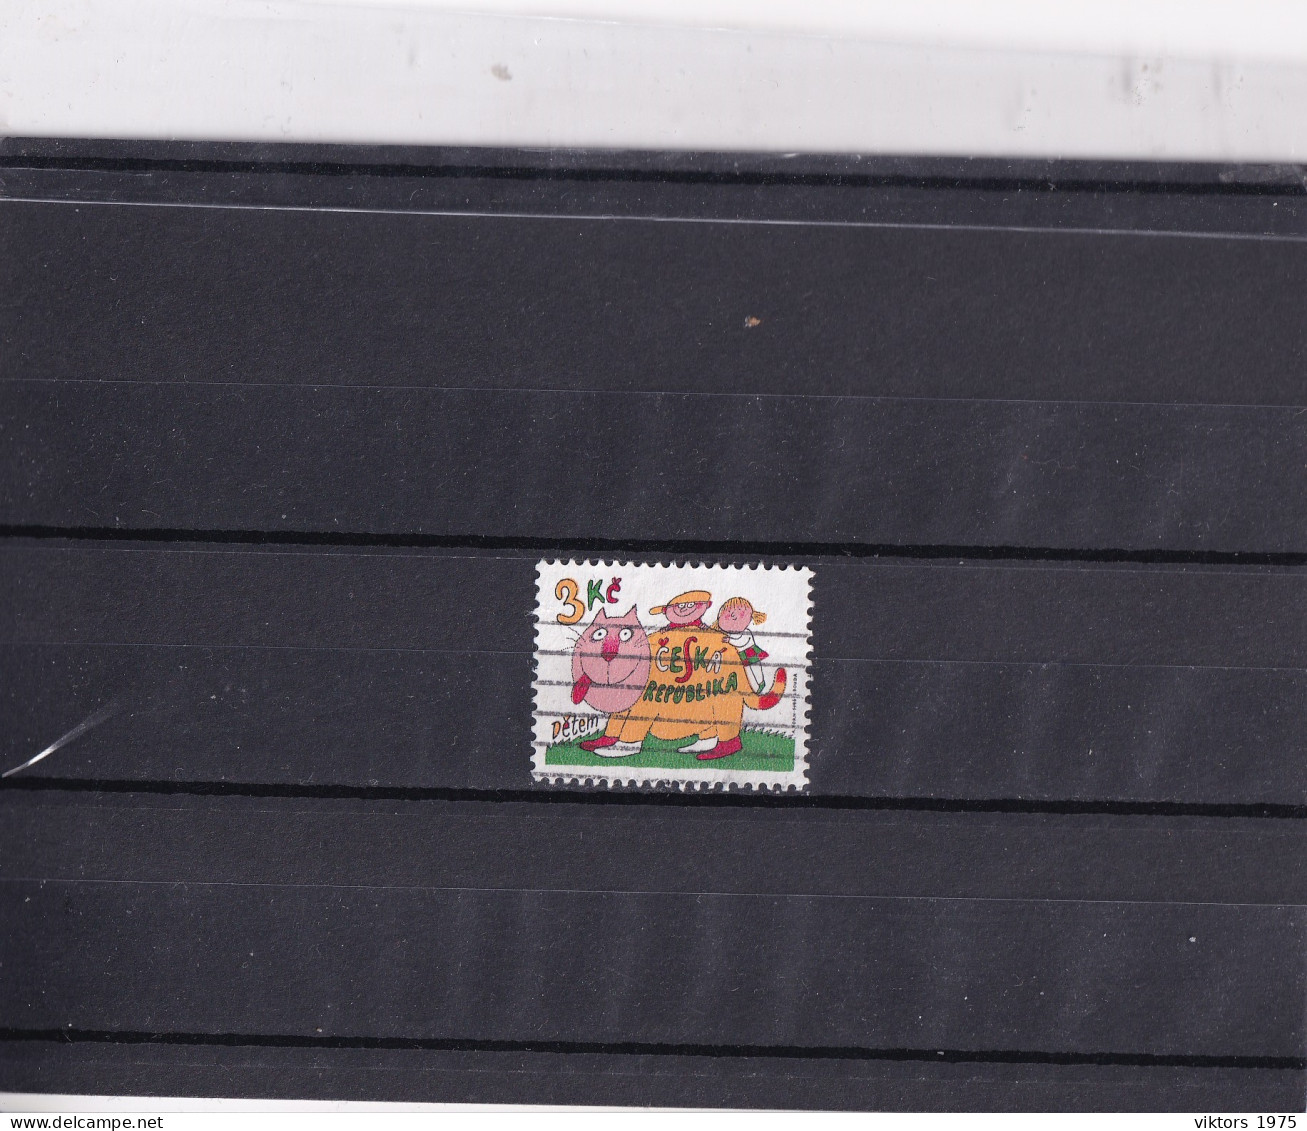 Used Stamp Nr.117 In MICHEL Catalog - Usati